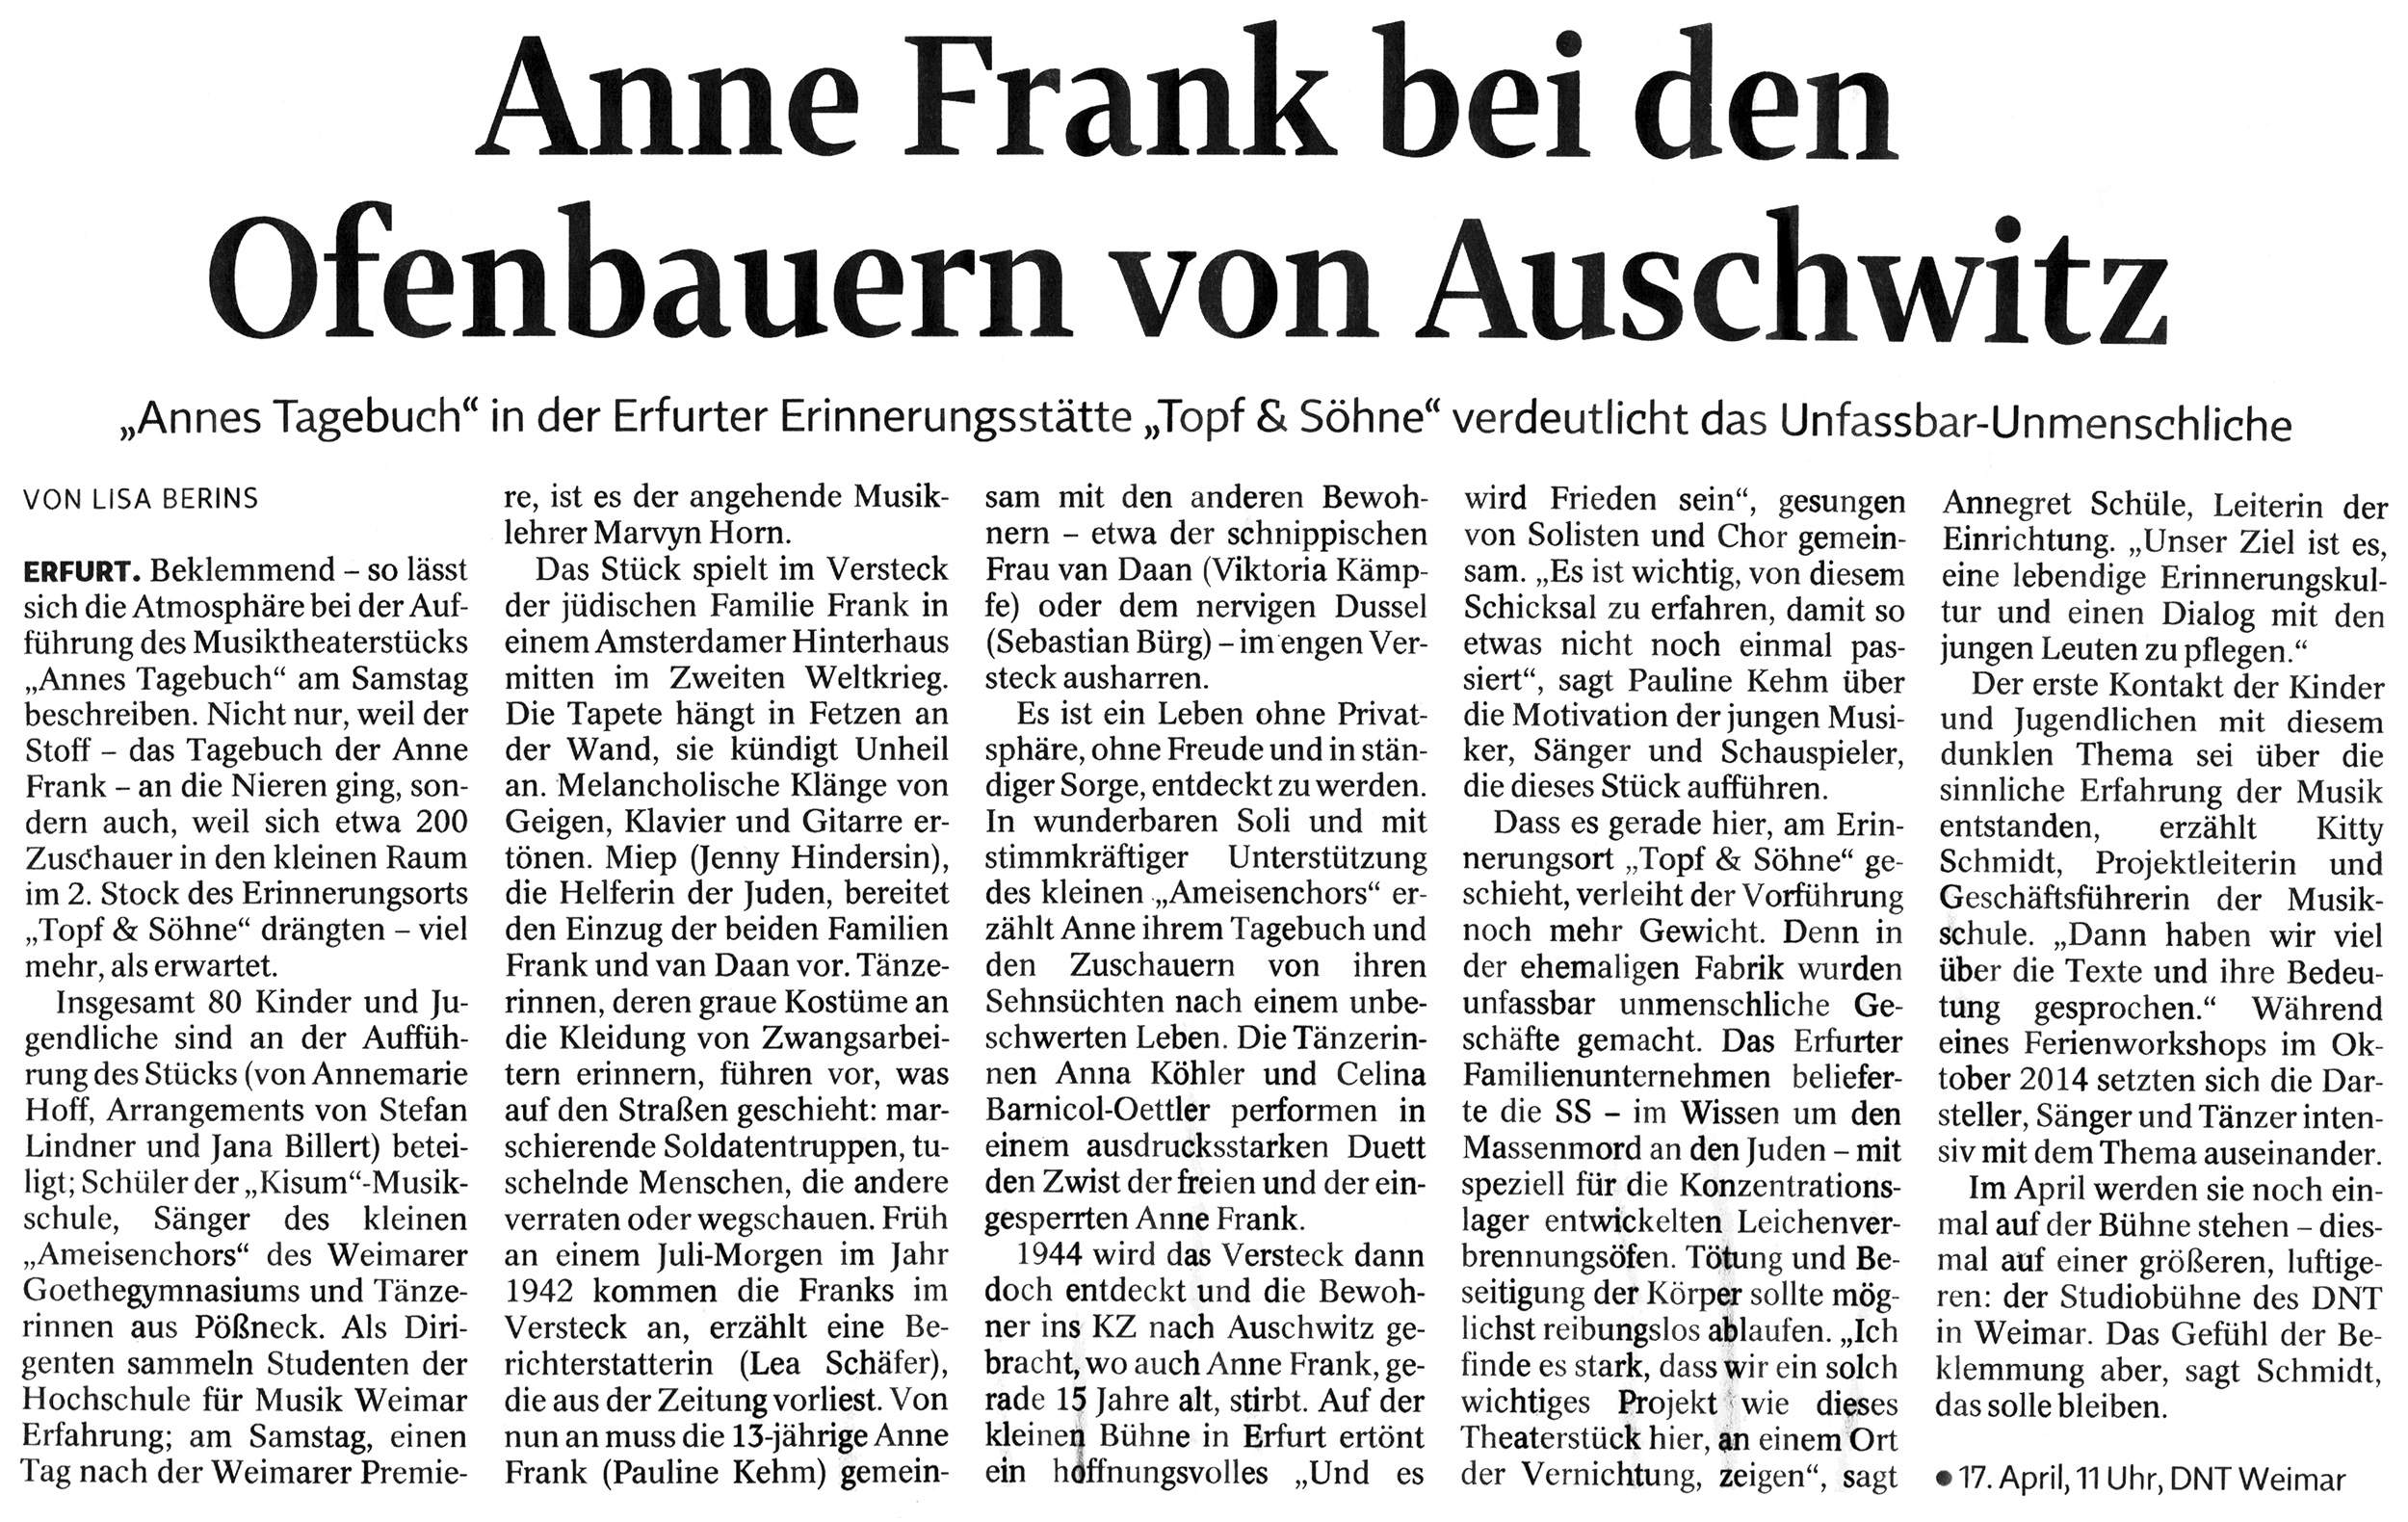 02.03.2015, Thüringische Landeszeitung